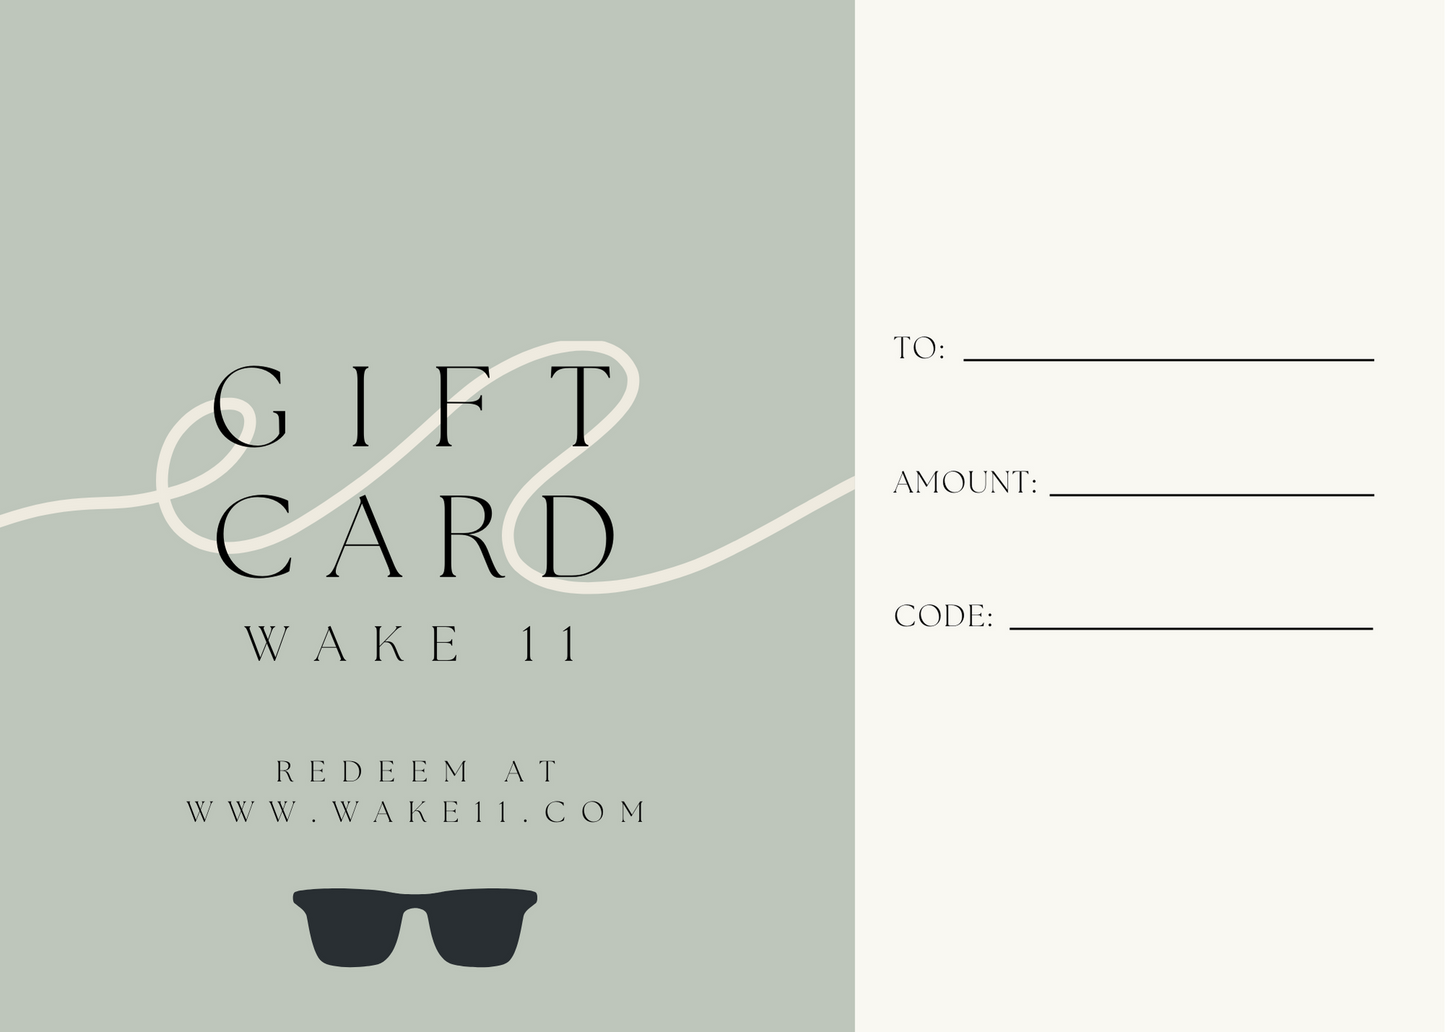 Wake 11 Gift Card